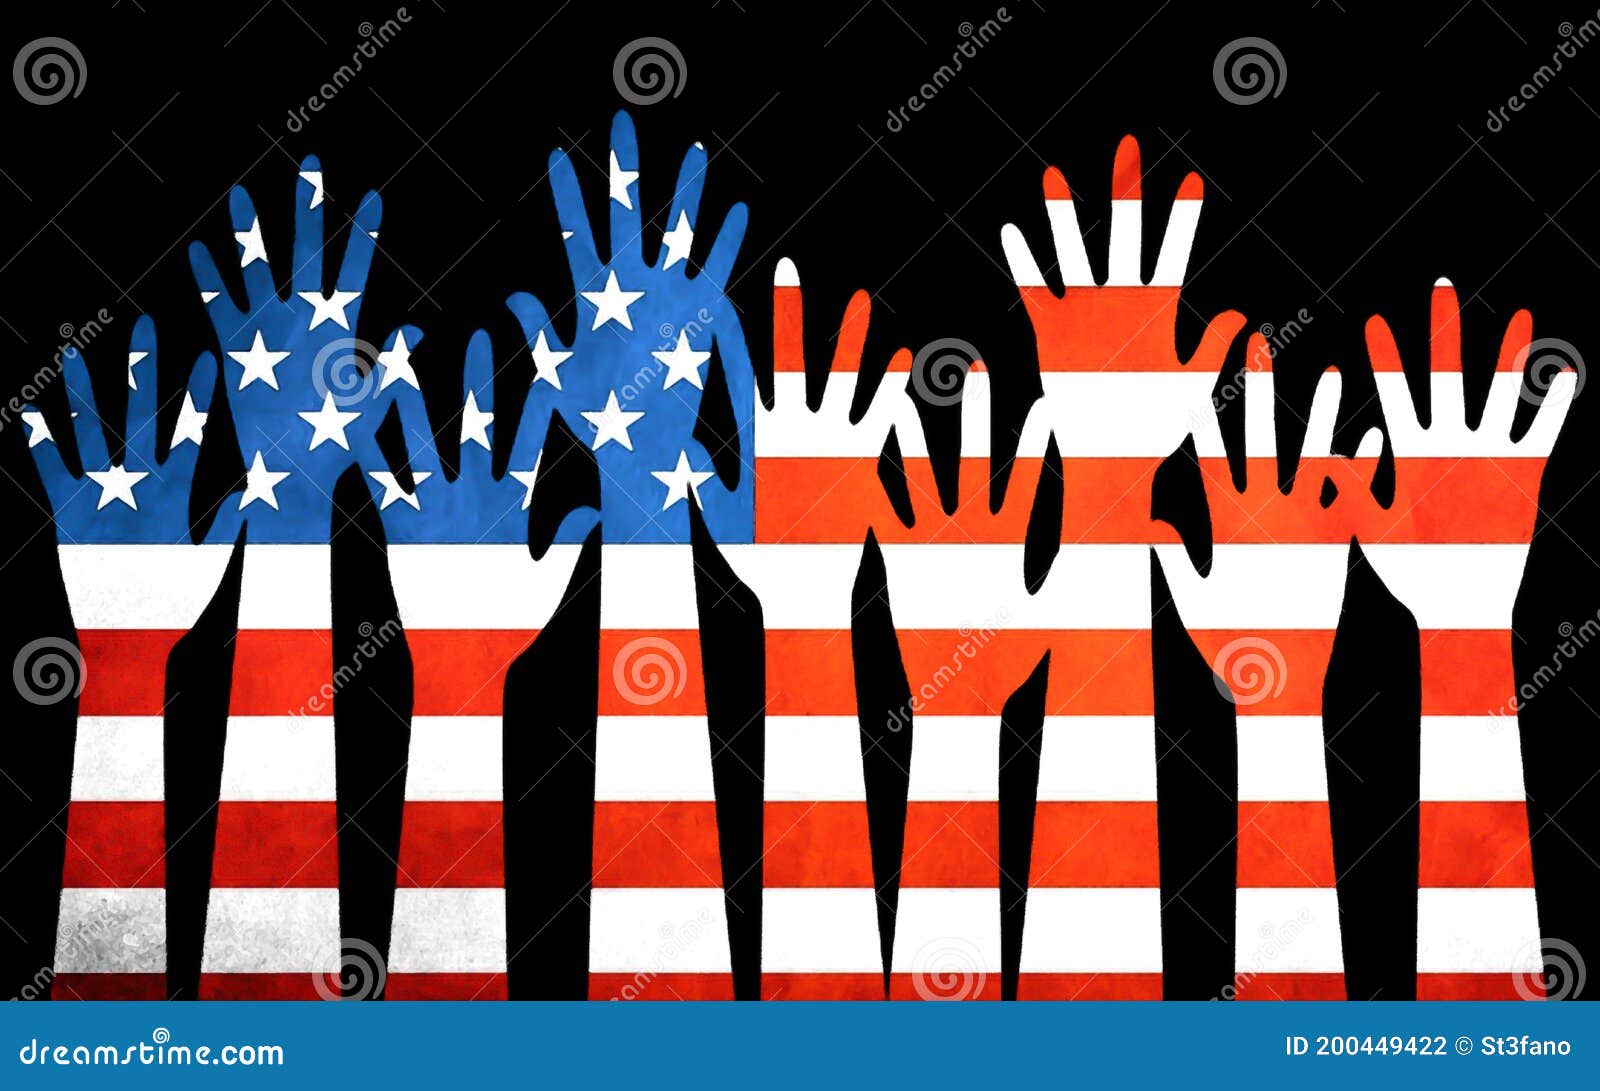 bandiera usa con mani in diversi colori dietro le strisce della bandiera americana